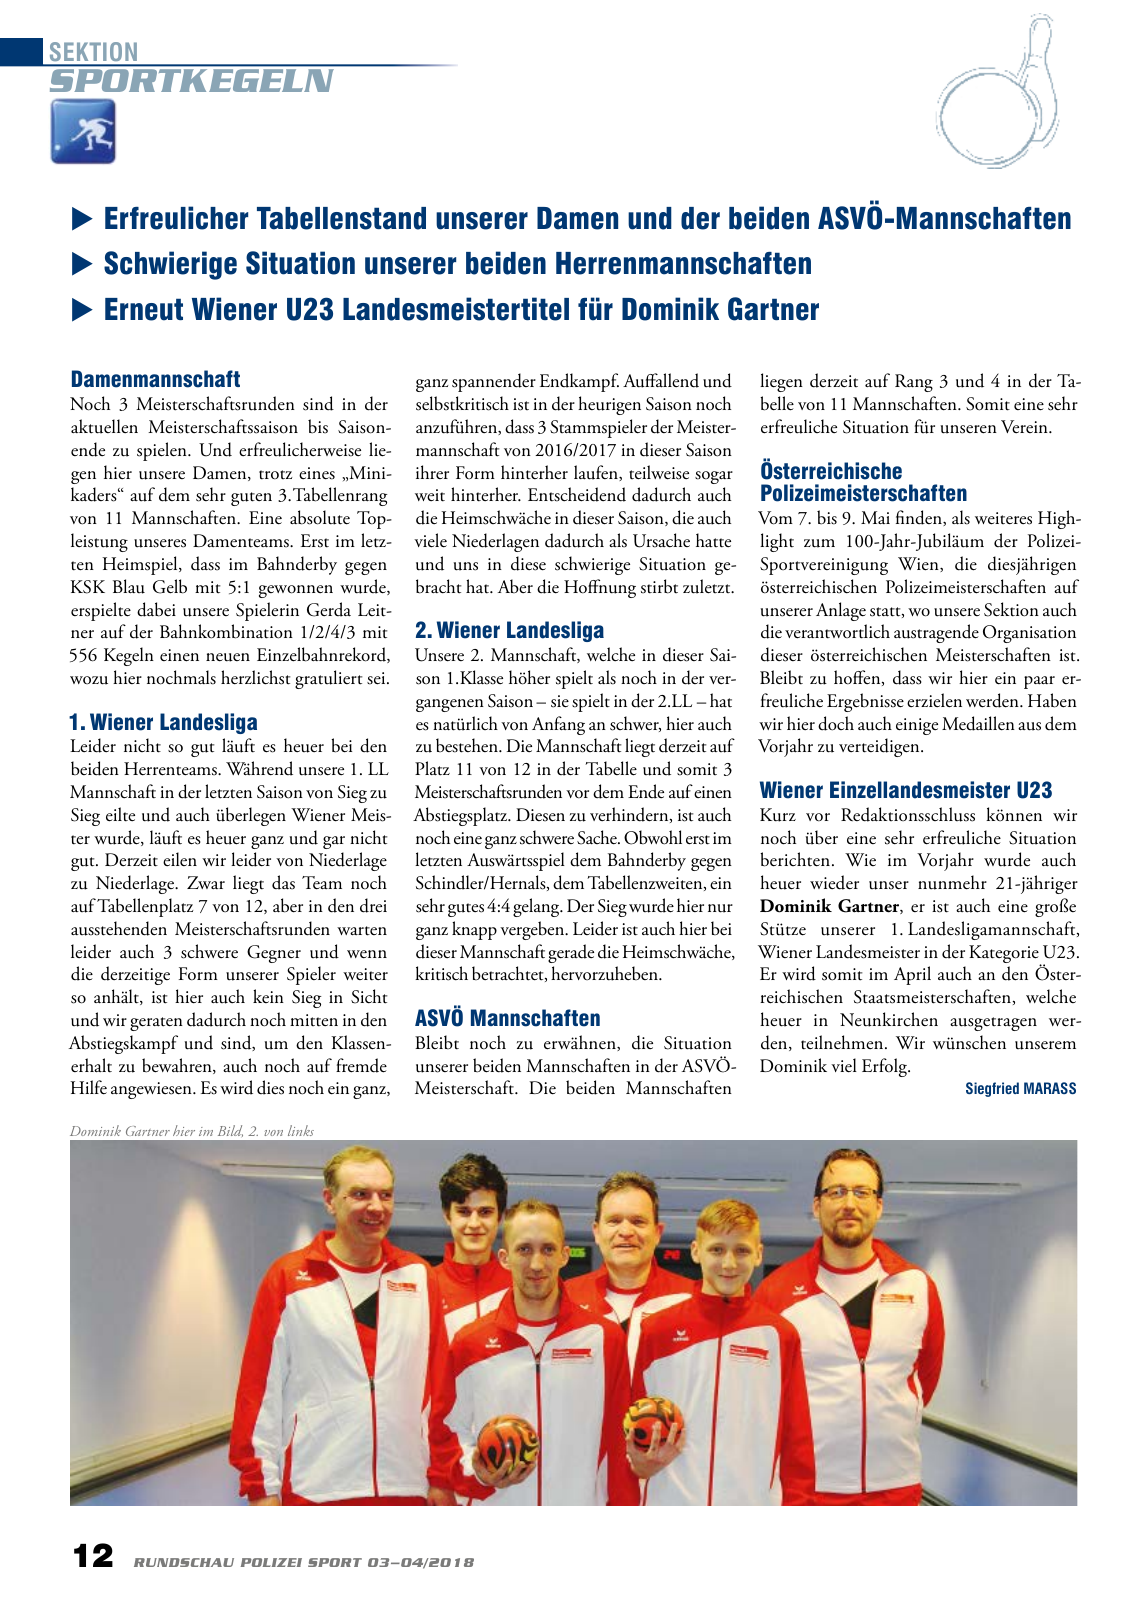 Vorschau Rundschau Polizei Sport 03-04/2018 Seite 12